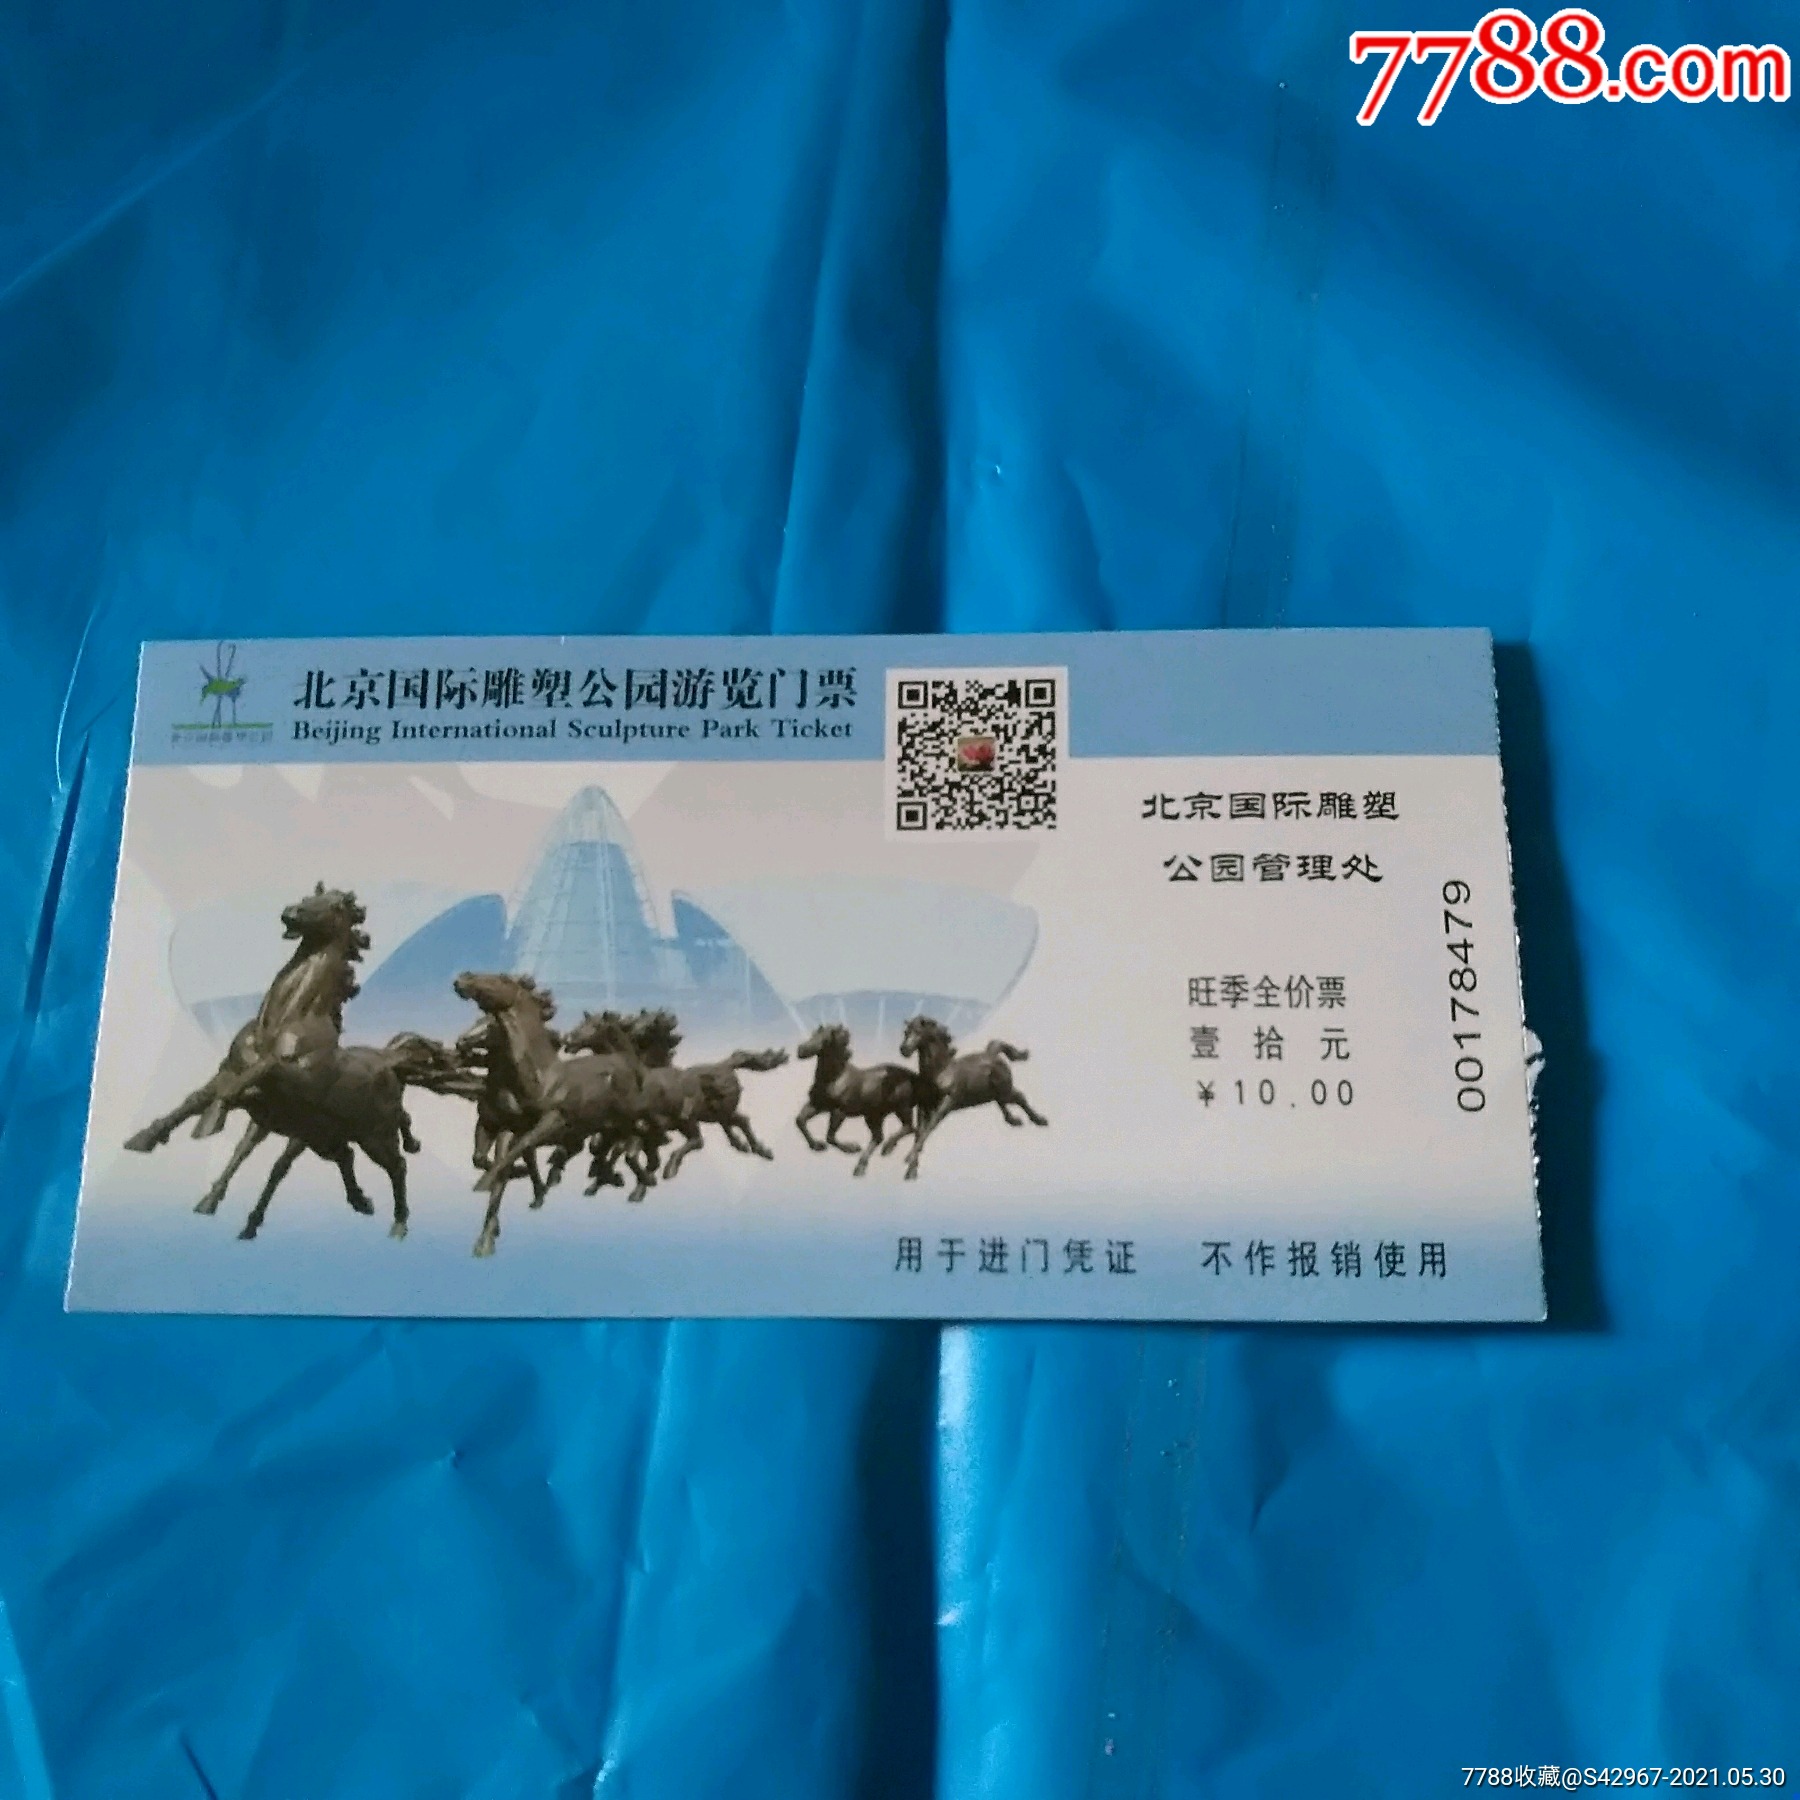 北京国际雕塑公园游览门票